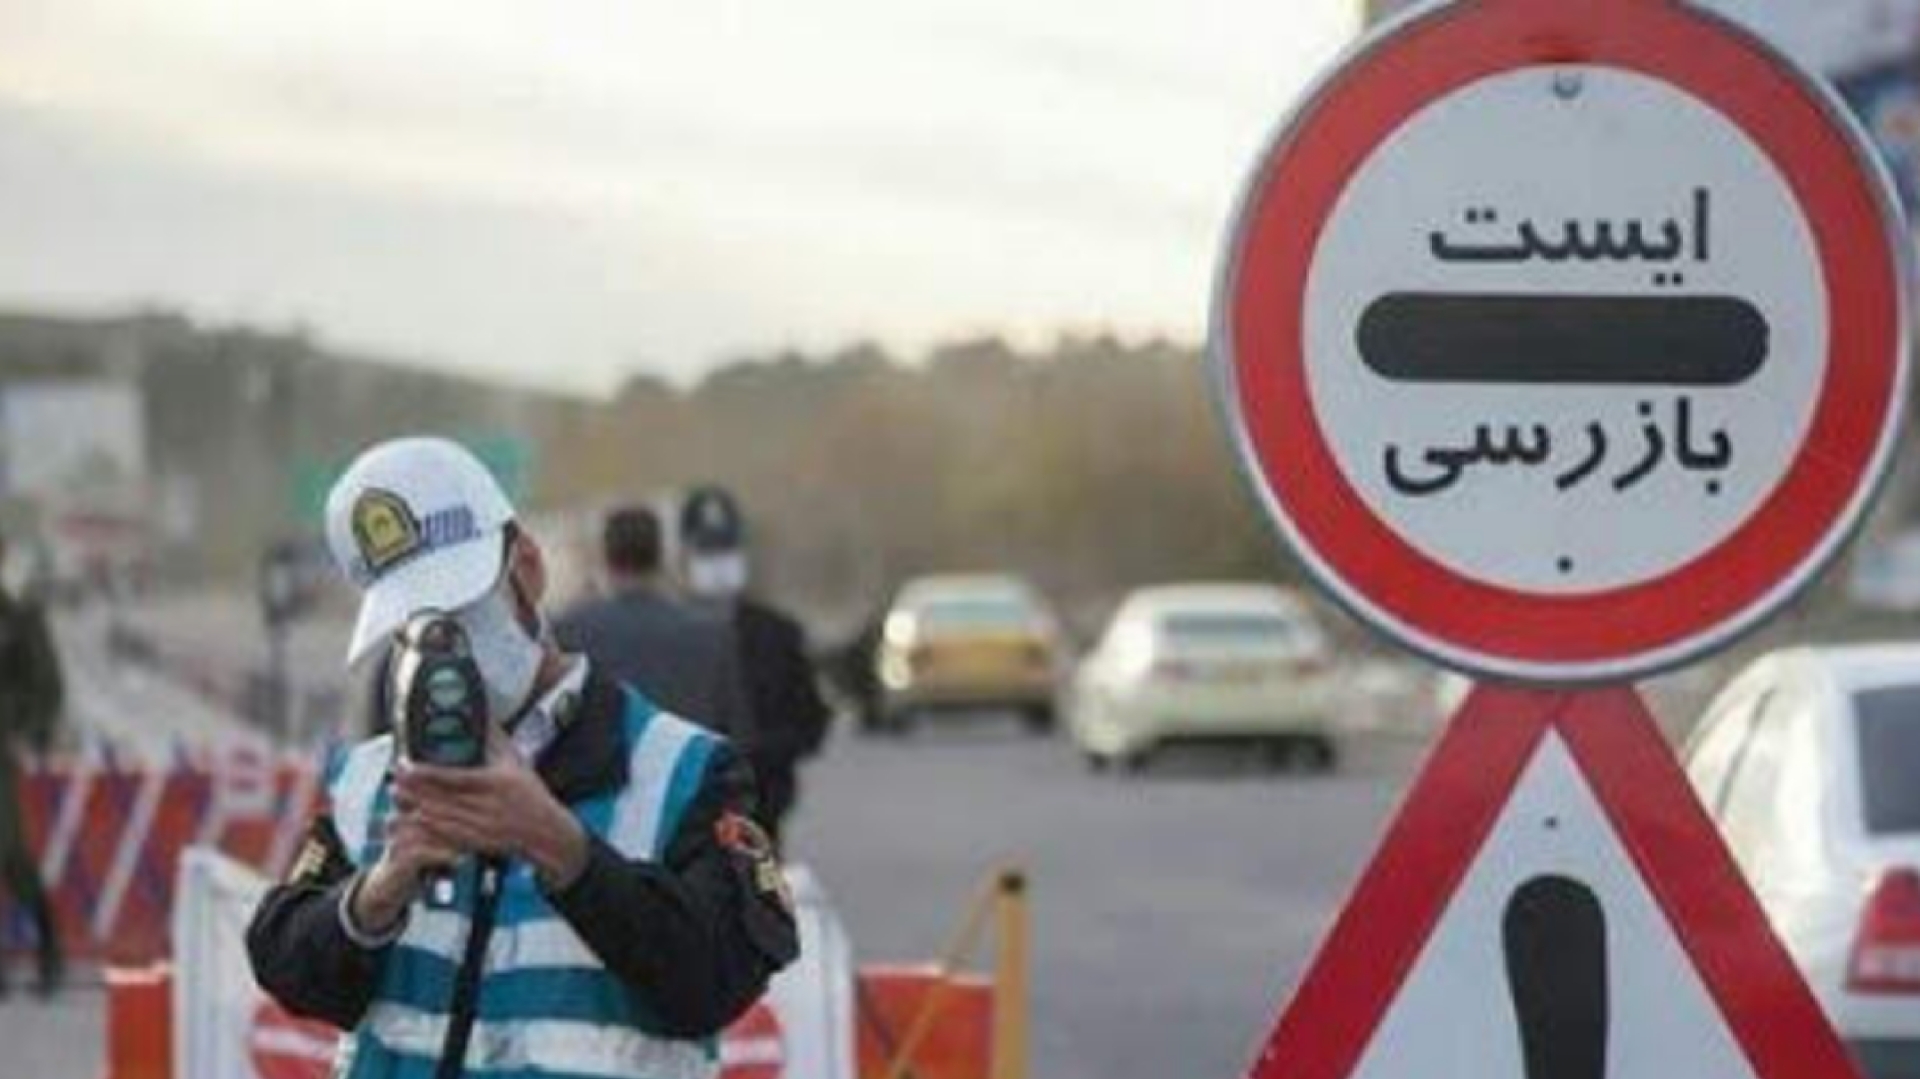 جریمه رانندگان به علت شاد نبودن! + فیلم